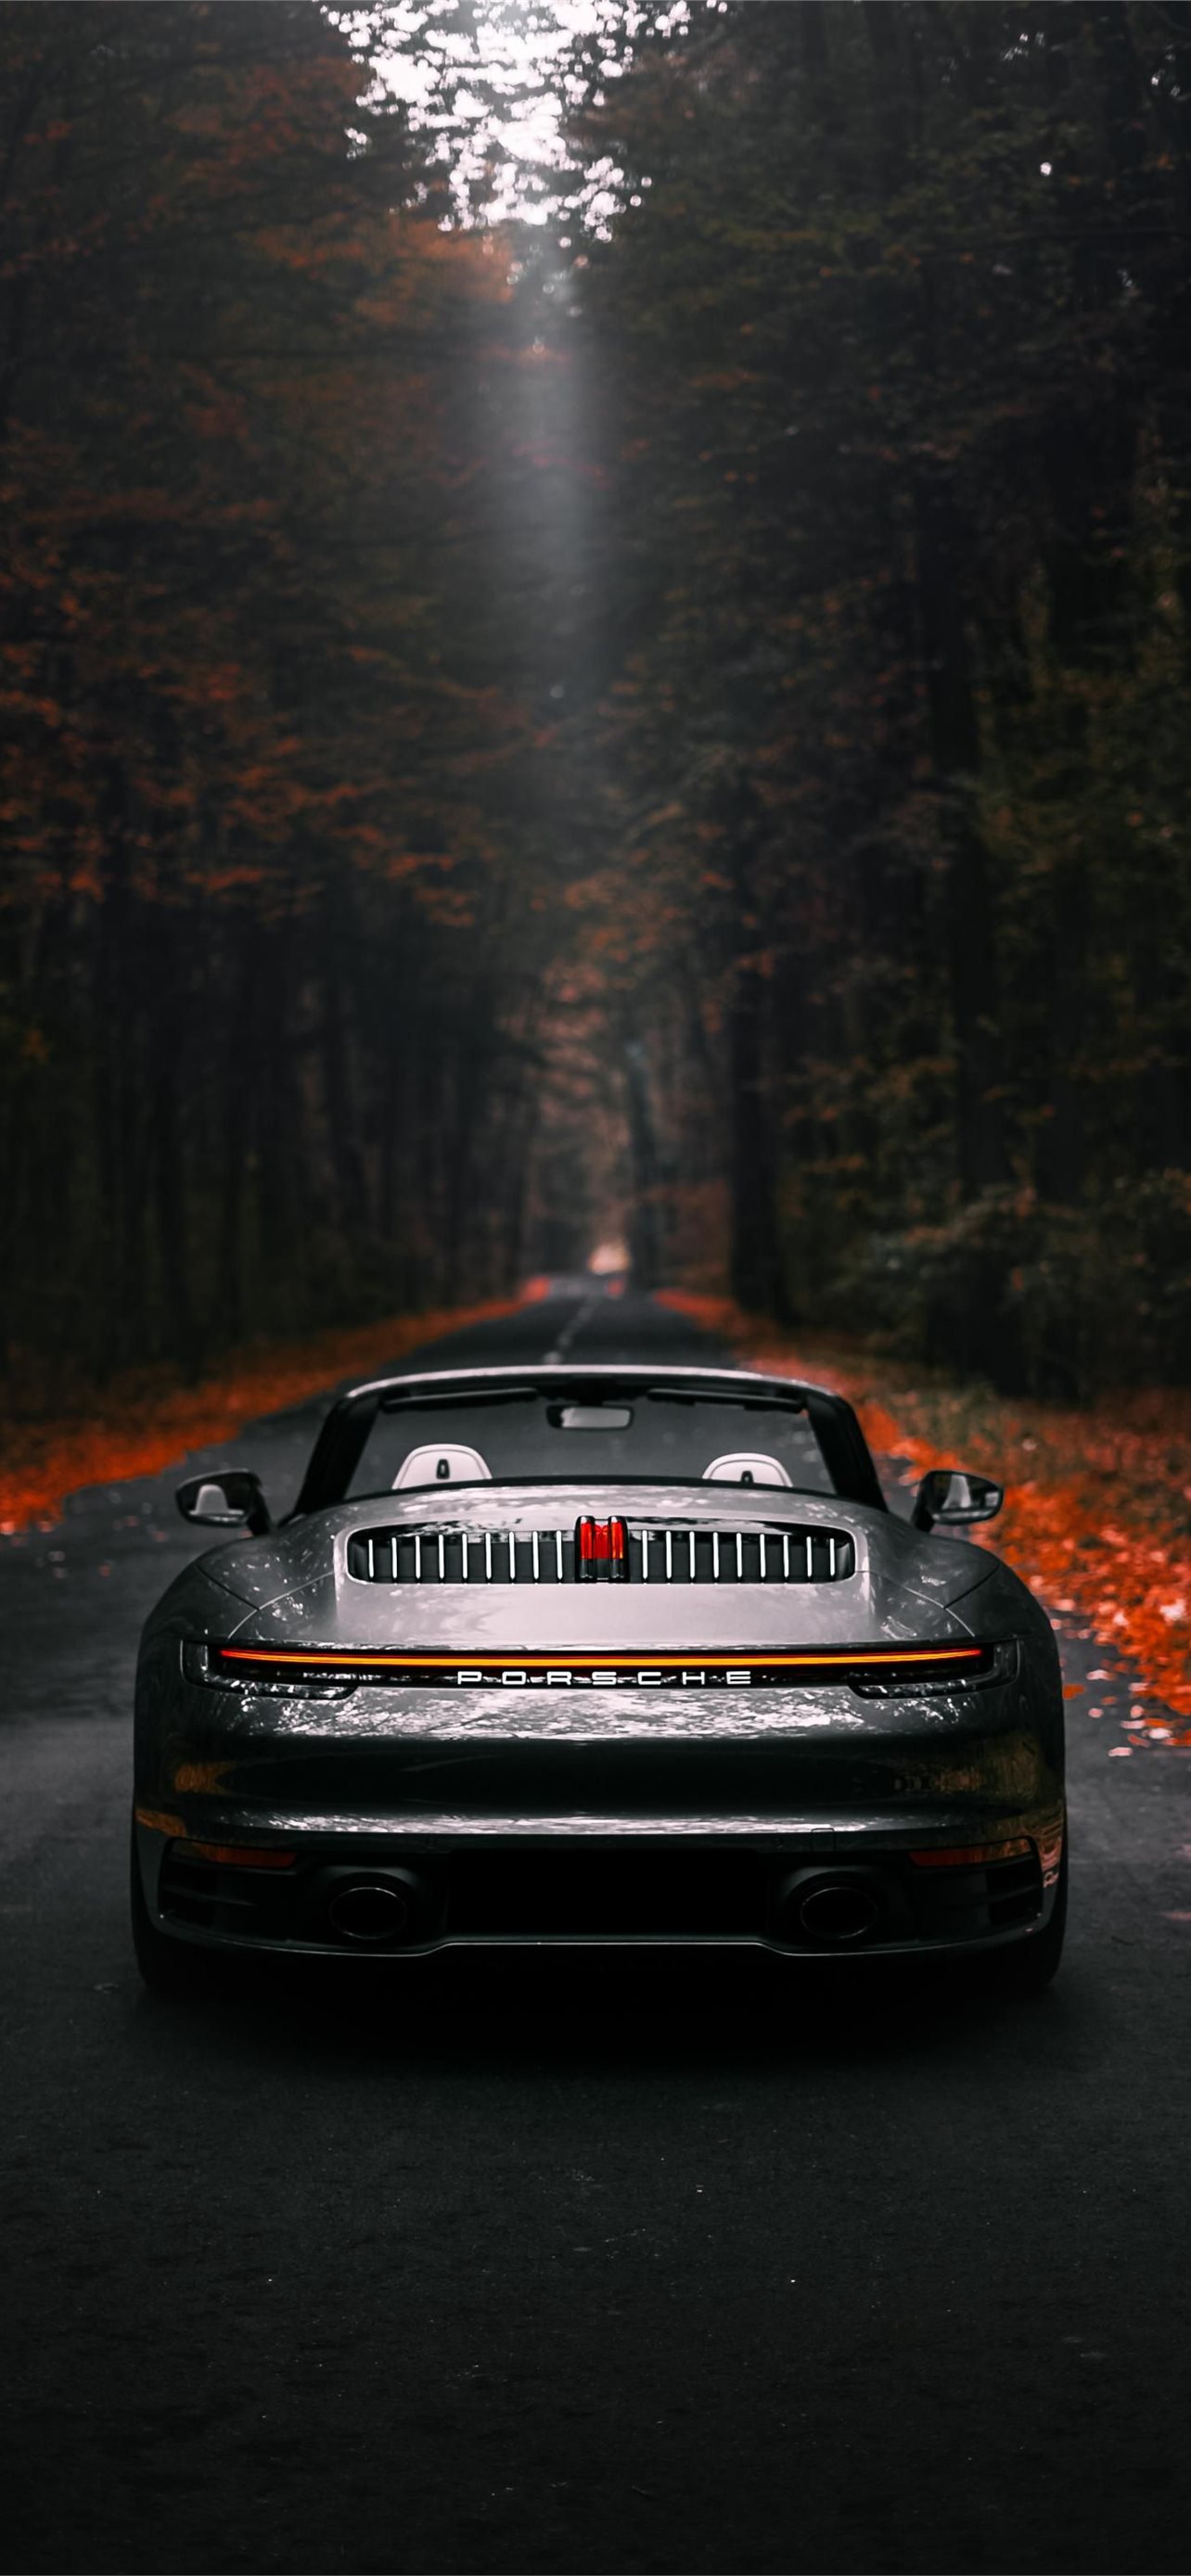 Hình nền Porsche 911 Cabriolet trên iPhone sẽ đưa bạn đến với thế giới của những chiếc xe đẳng cấp mà không cần phải chi bao nhiêu tiền để sở hữu. Tất cả những gì bạn cần là một chiếc iPhone và một bộ sưu tập hình nền đẳng cấp với những bức ảnh tuyệt đẹp về Porsche 911 Cabriolet.